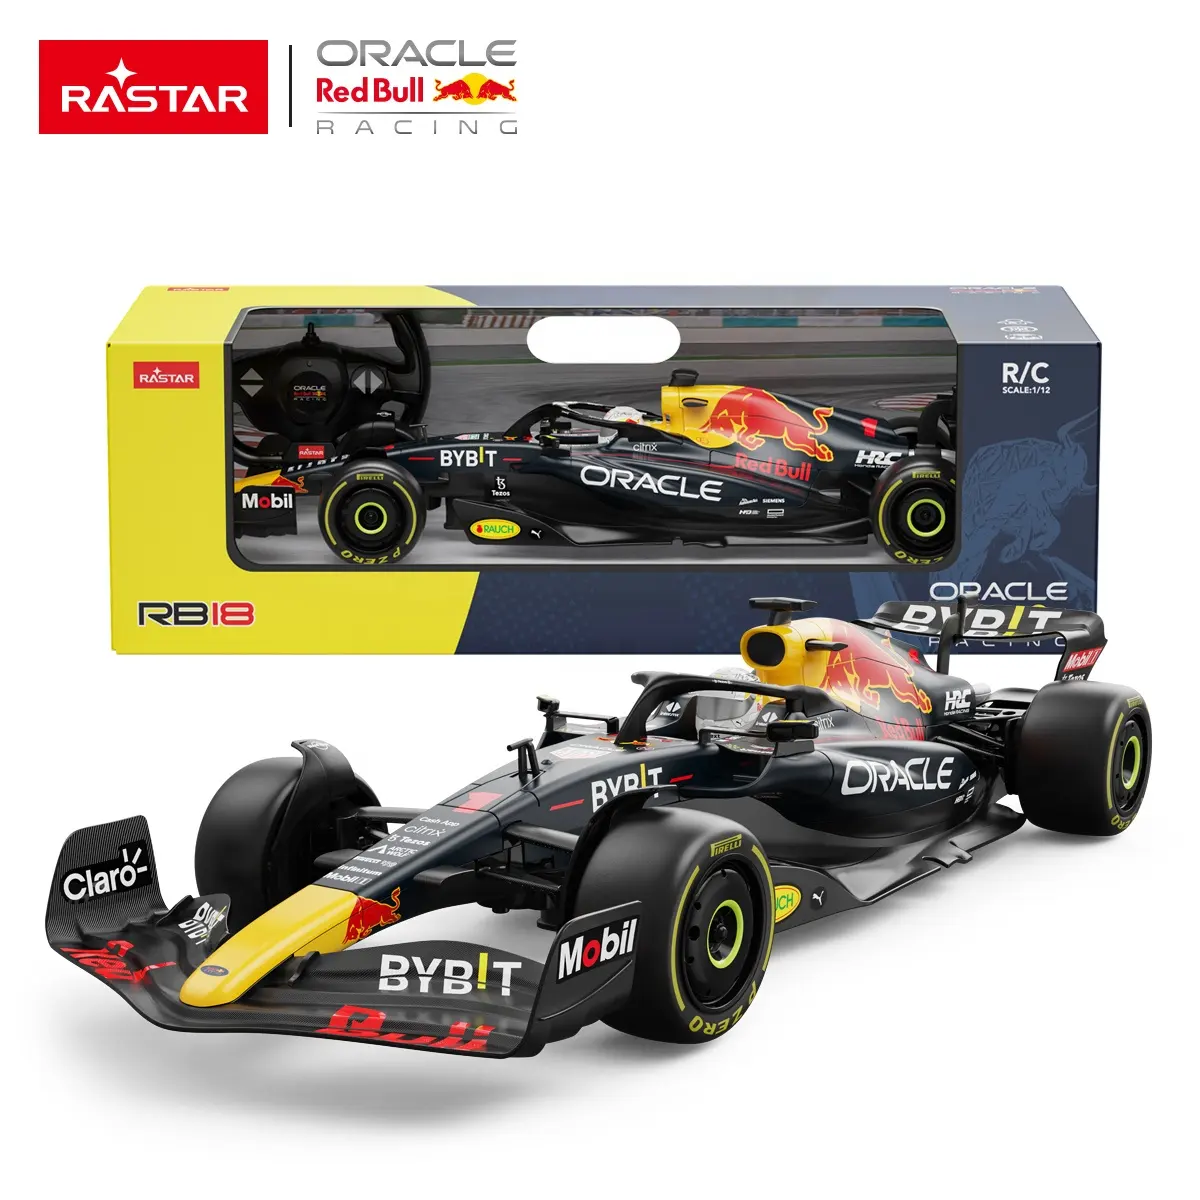 لعبة سيارة سباق F1 عالية السرعة من Rastar مع جهاز للتحكم عن بُعد لعبة للأطفال طراز RB18 مرخص لسيارة سباق Orakel Red Bull بمقياس 1:12